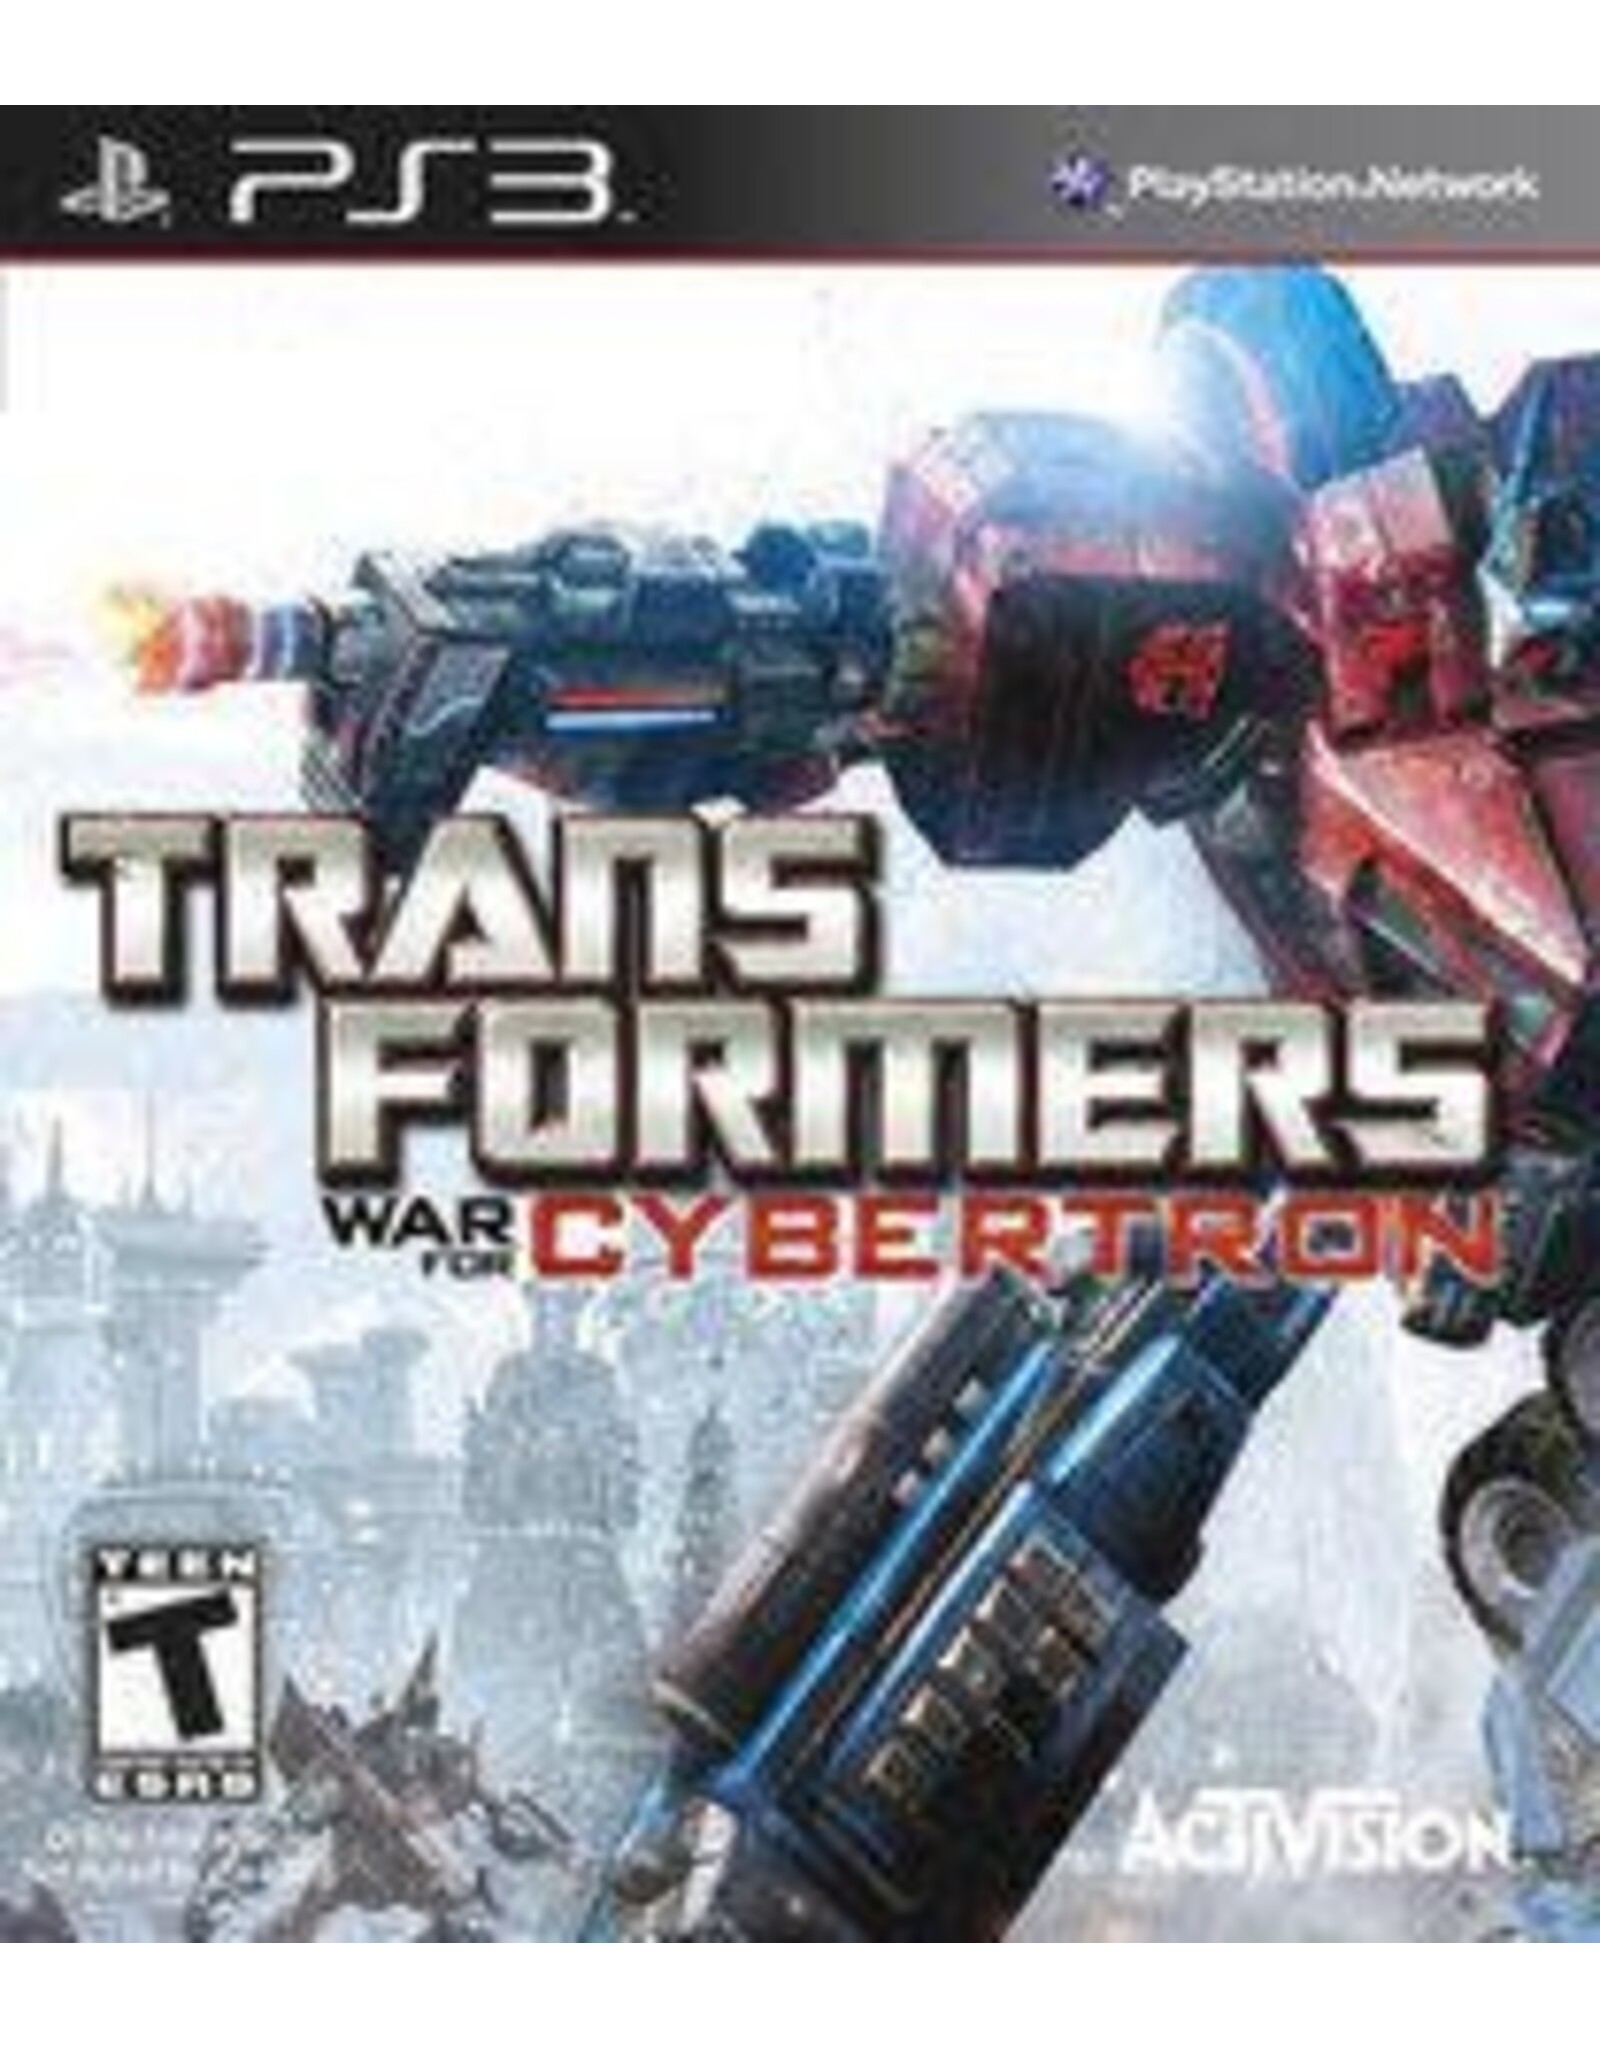 Playstation 3 Transformers: War for Cybertron (CiB)